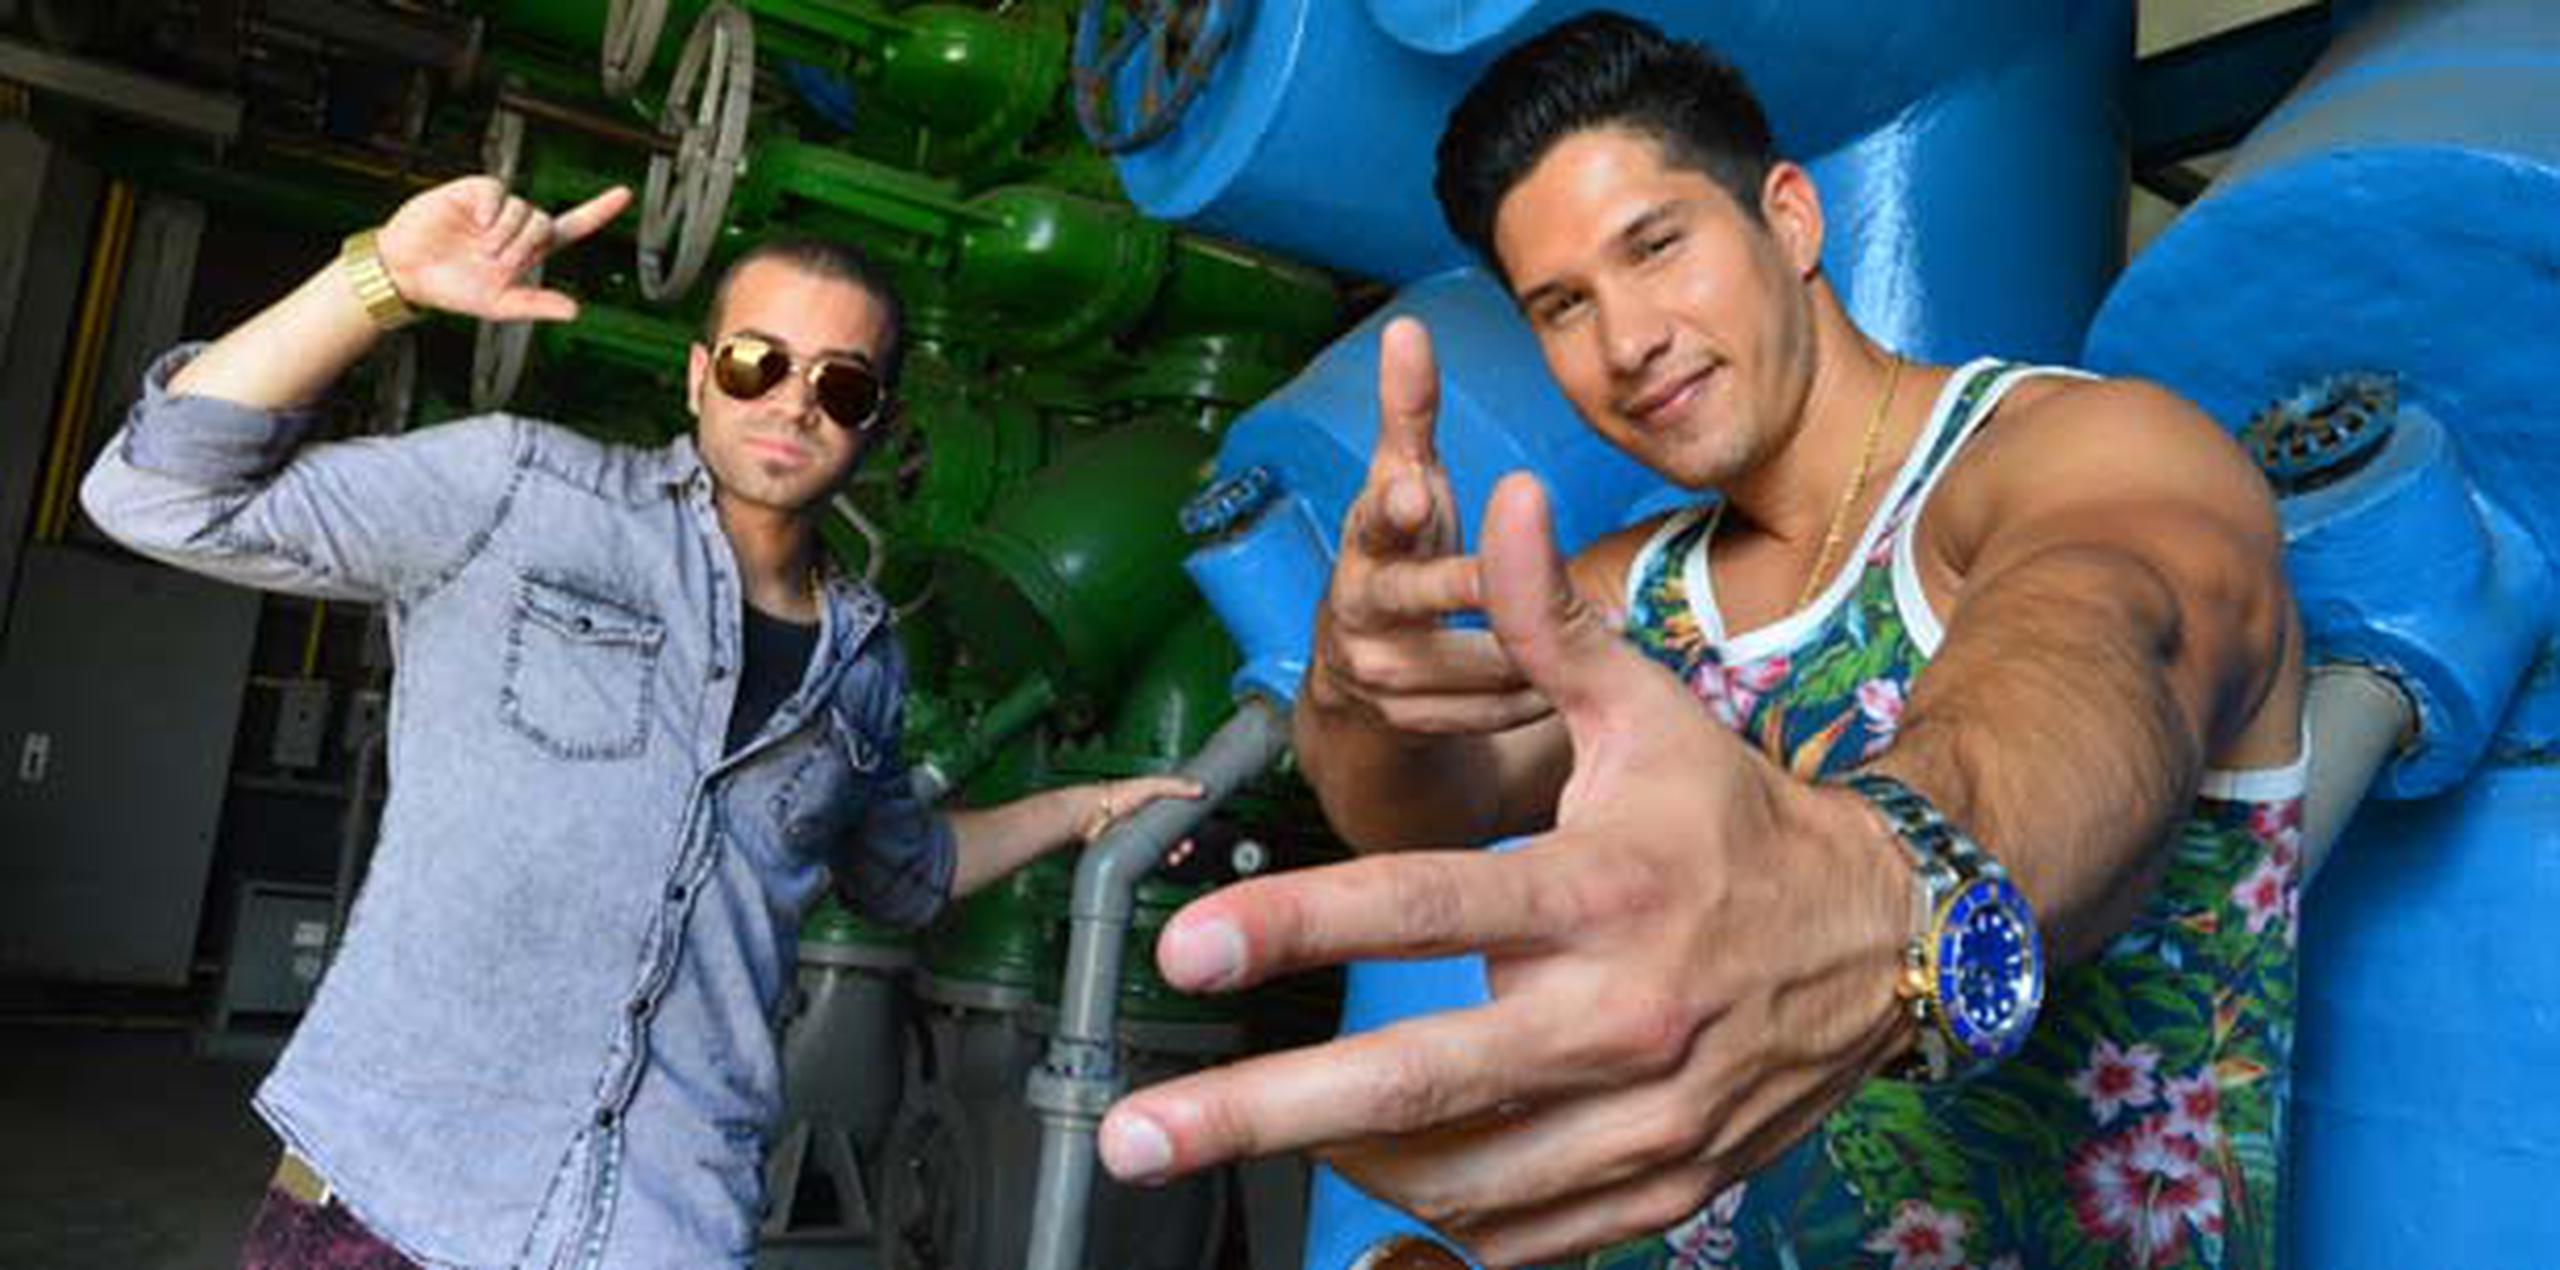 El dúo se encuentra en Puerto Rico promocionando su nueva producción musical. (luis.alcaladelolmo@gfrmedia.com)